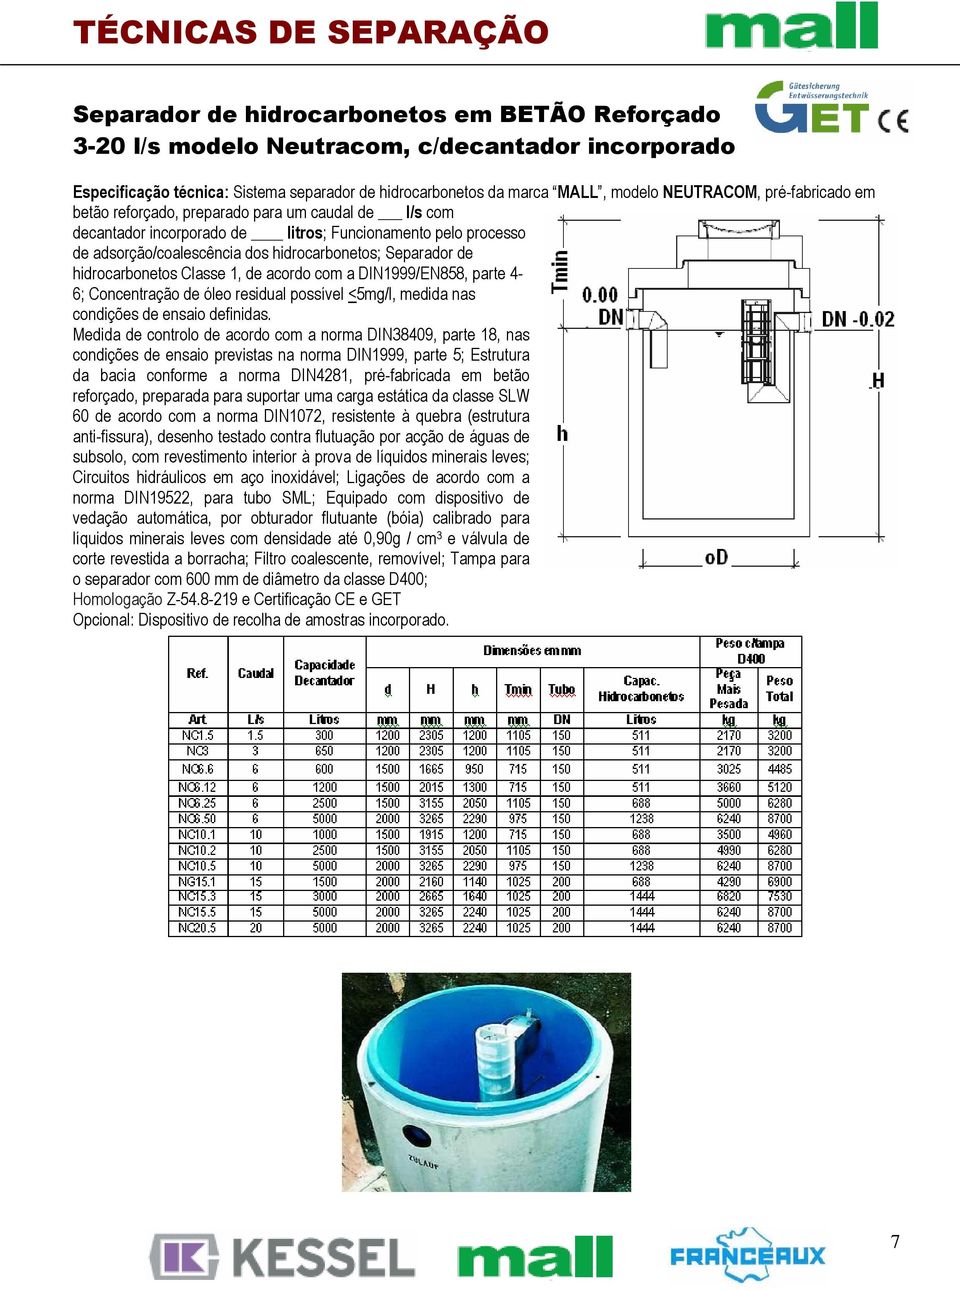 hidrocarbonetos Classe 1, de acordo com a DIN1999/EN858, parte 4-6; Concentração de óleo residual possível <5mg/l, medida nas condições de ensaio definidas.